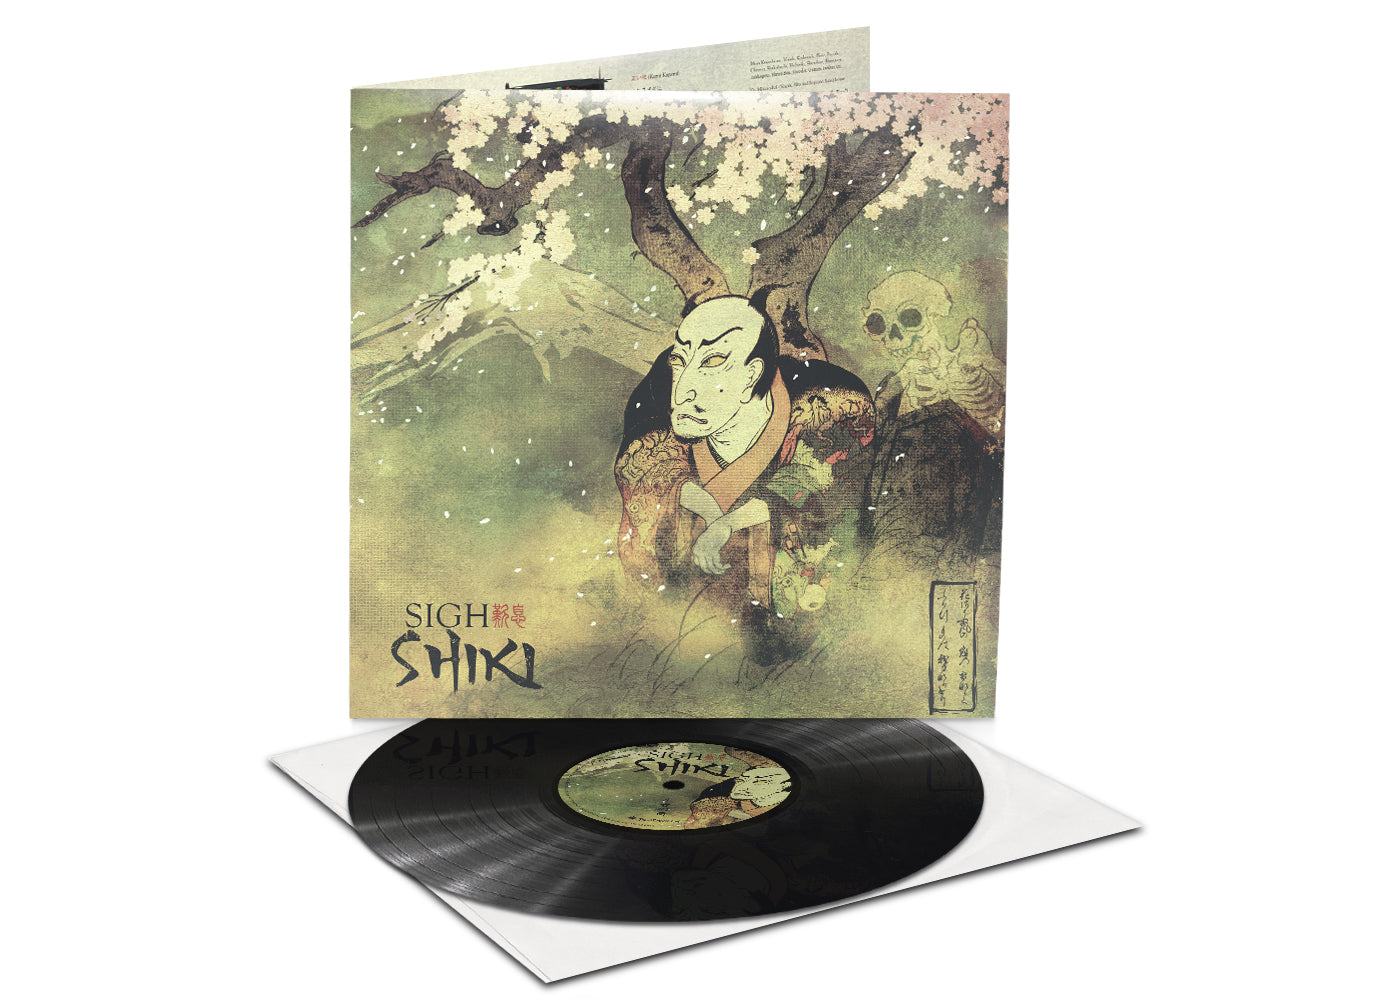 Sigh - Shiki LP